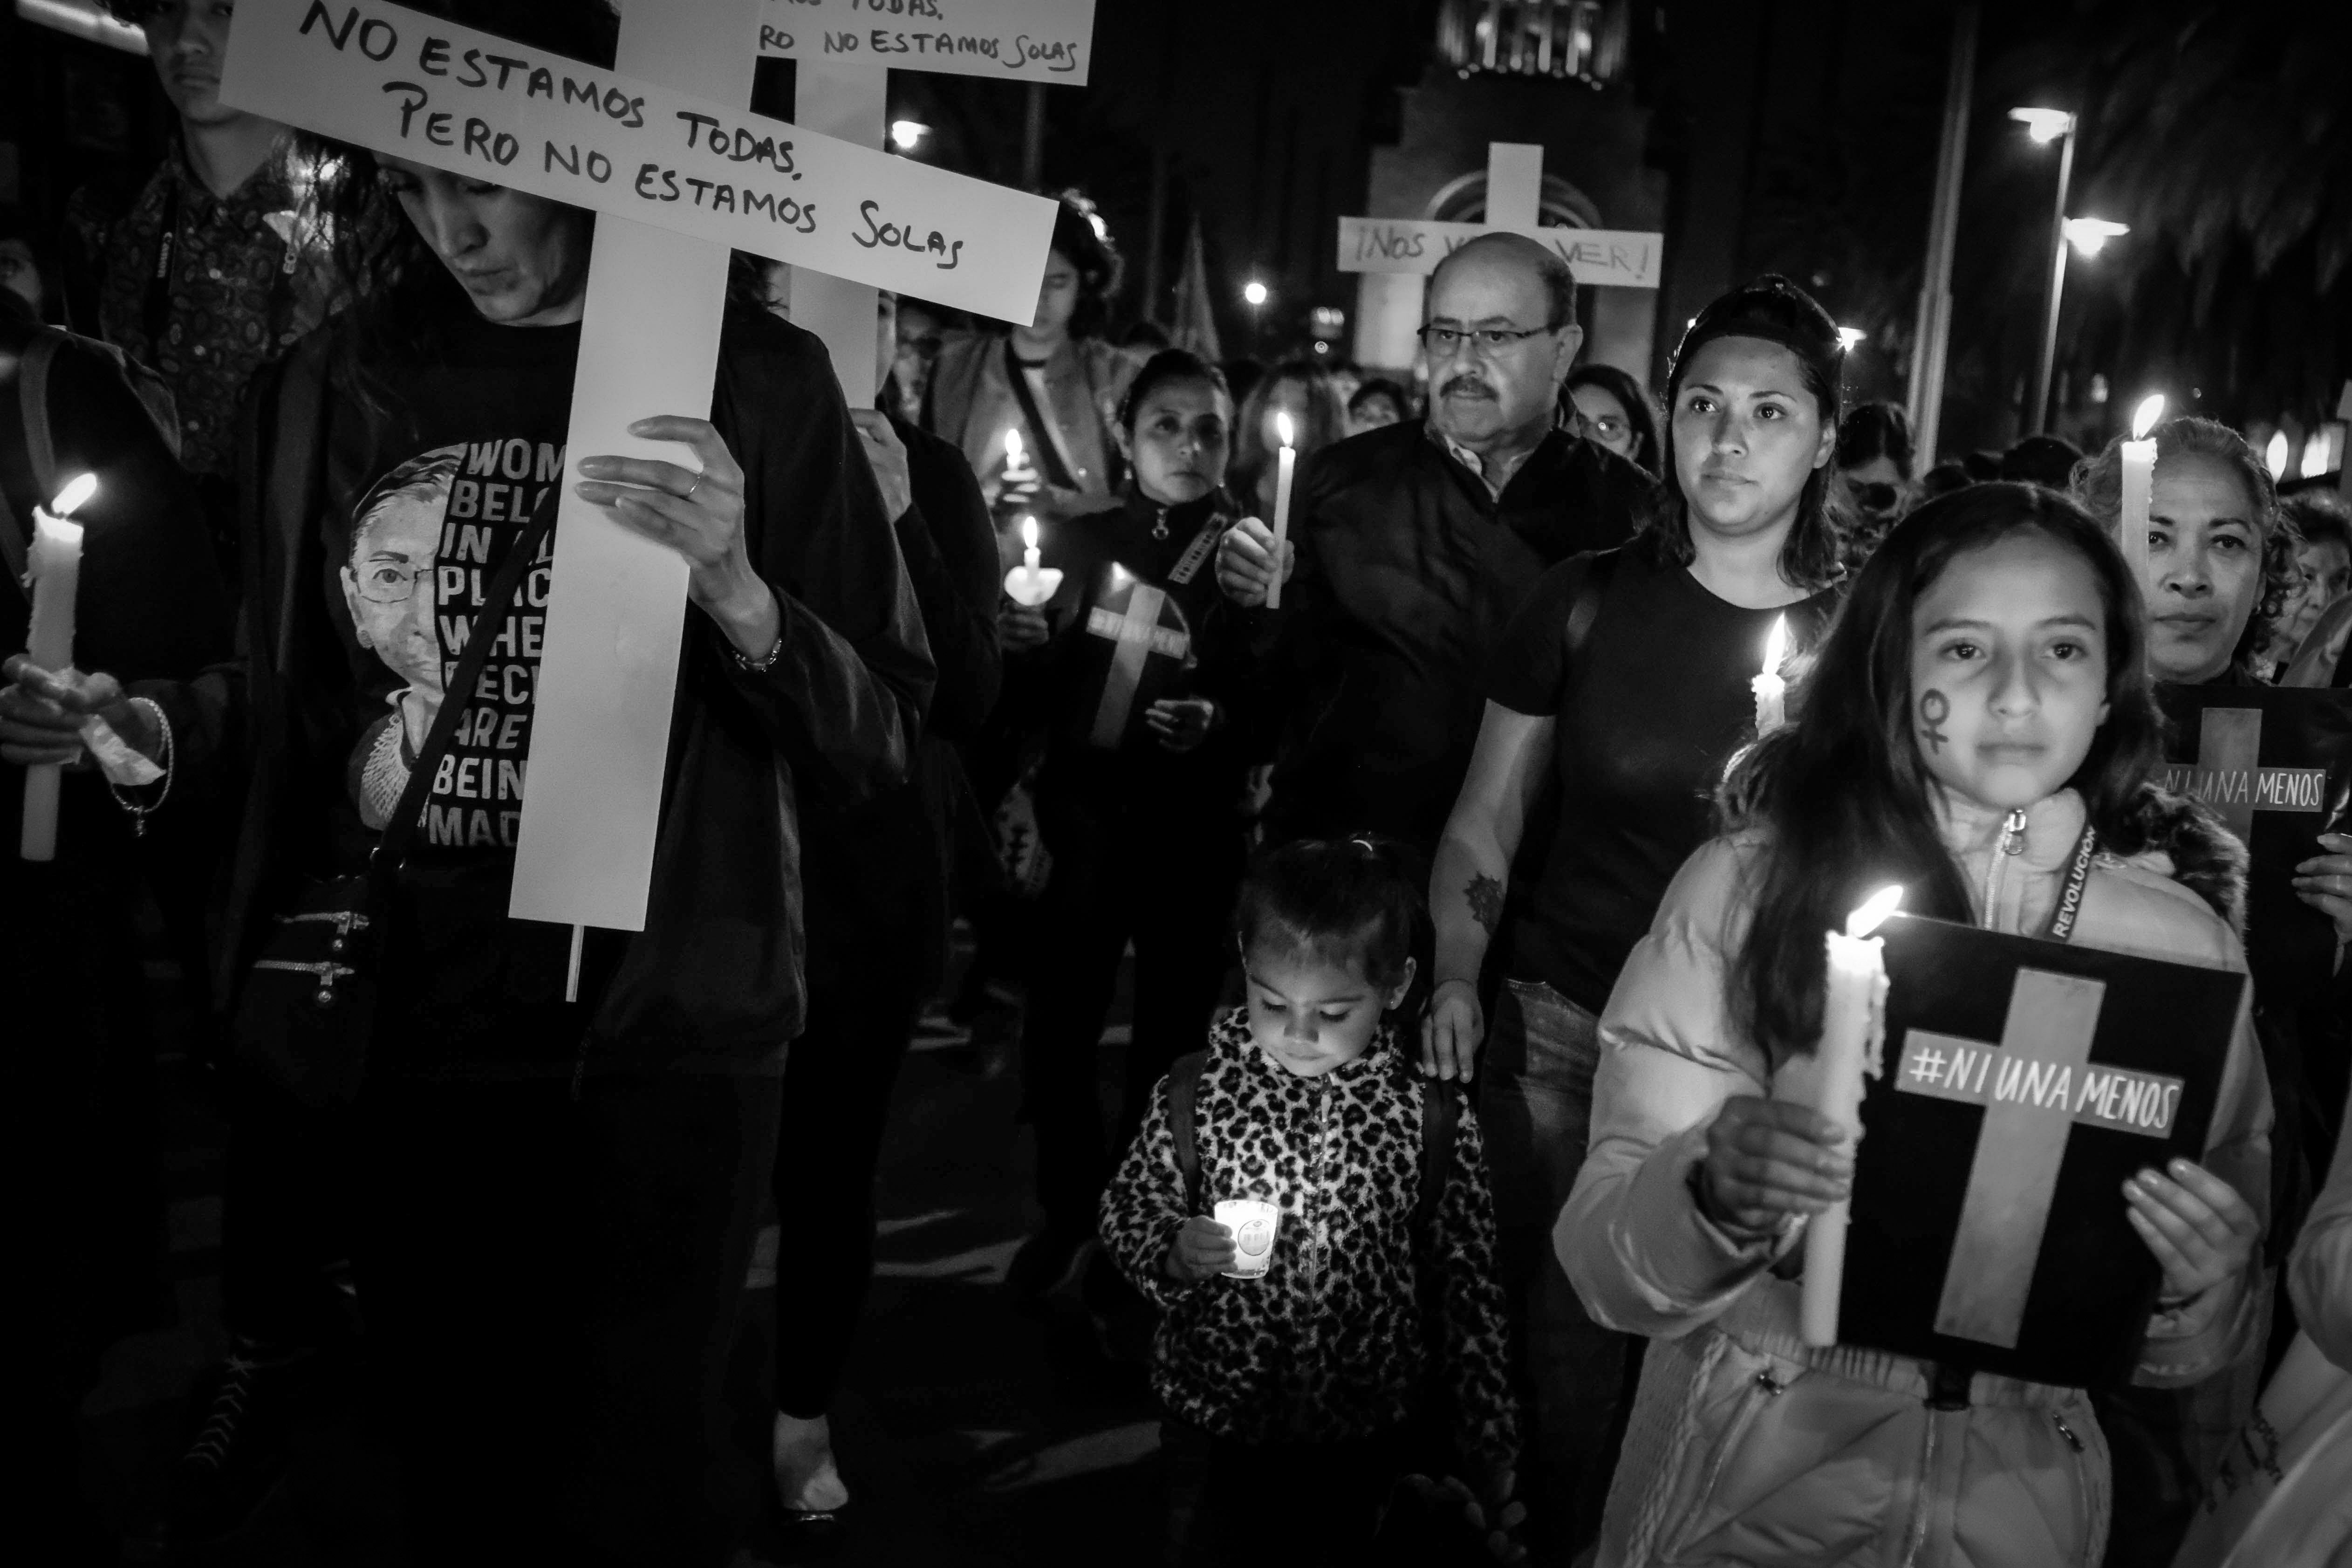 En México, cada día,10 mujeres son víctimas de feminicidios. Asesinatos que dejan 20 infancias huérfanas a cargo de mujeres que se convierten en ‘madres sustitutas’. © Greta Rico